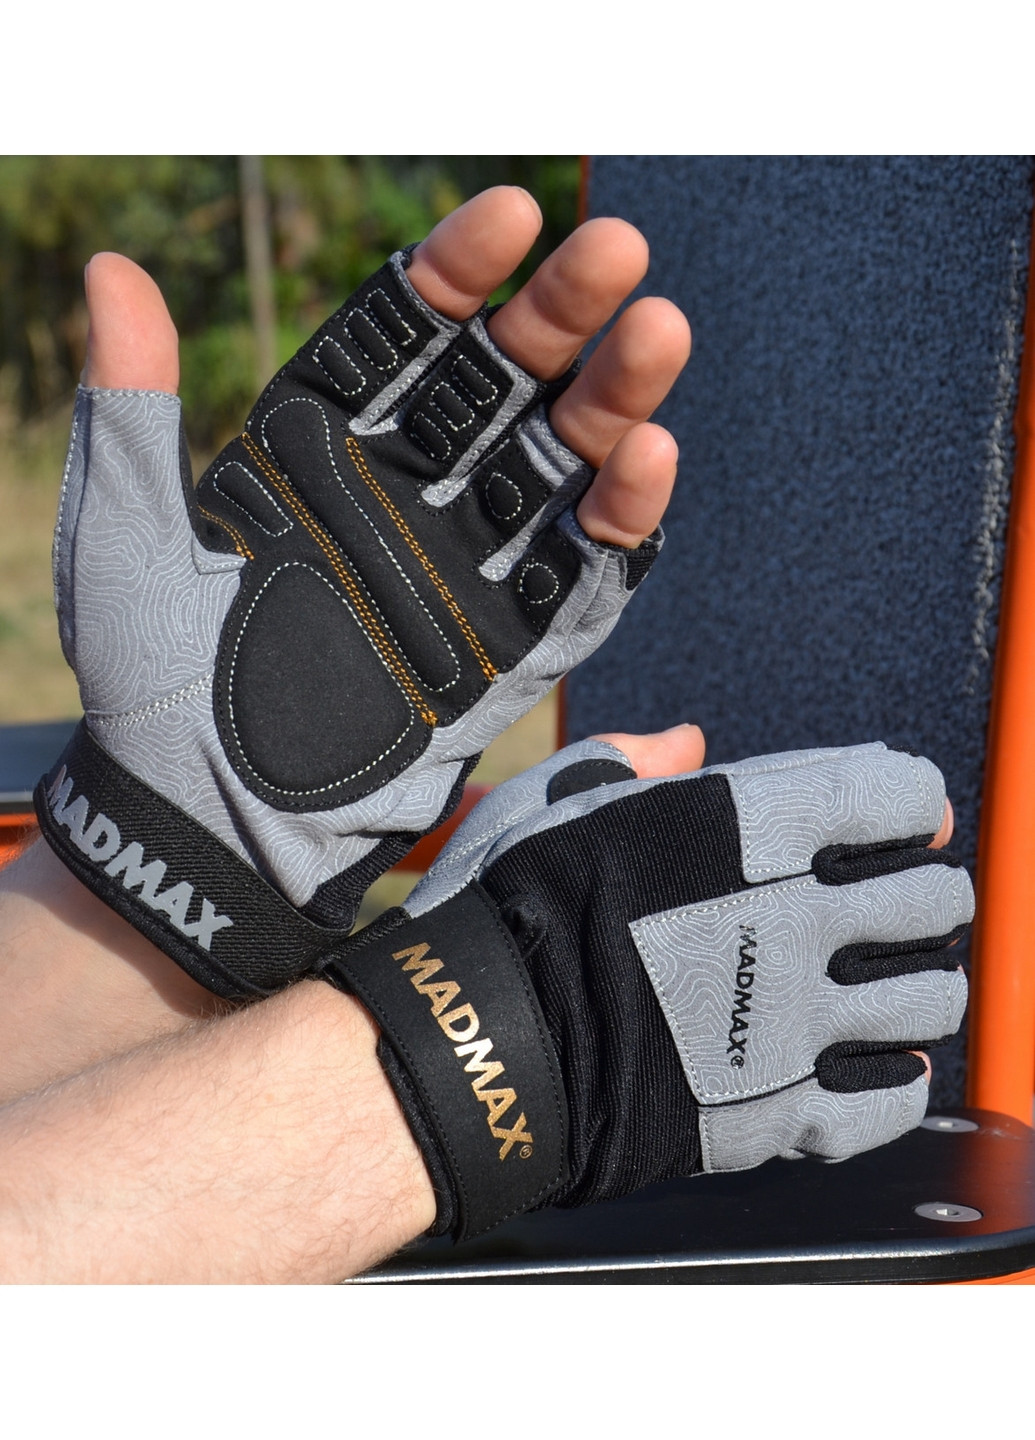 Унисекс перчатки для фитнеса M Mad Max (267654618)